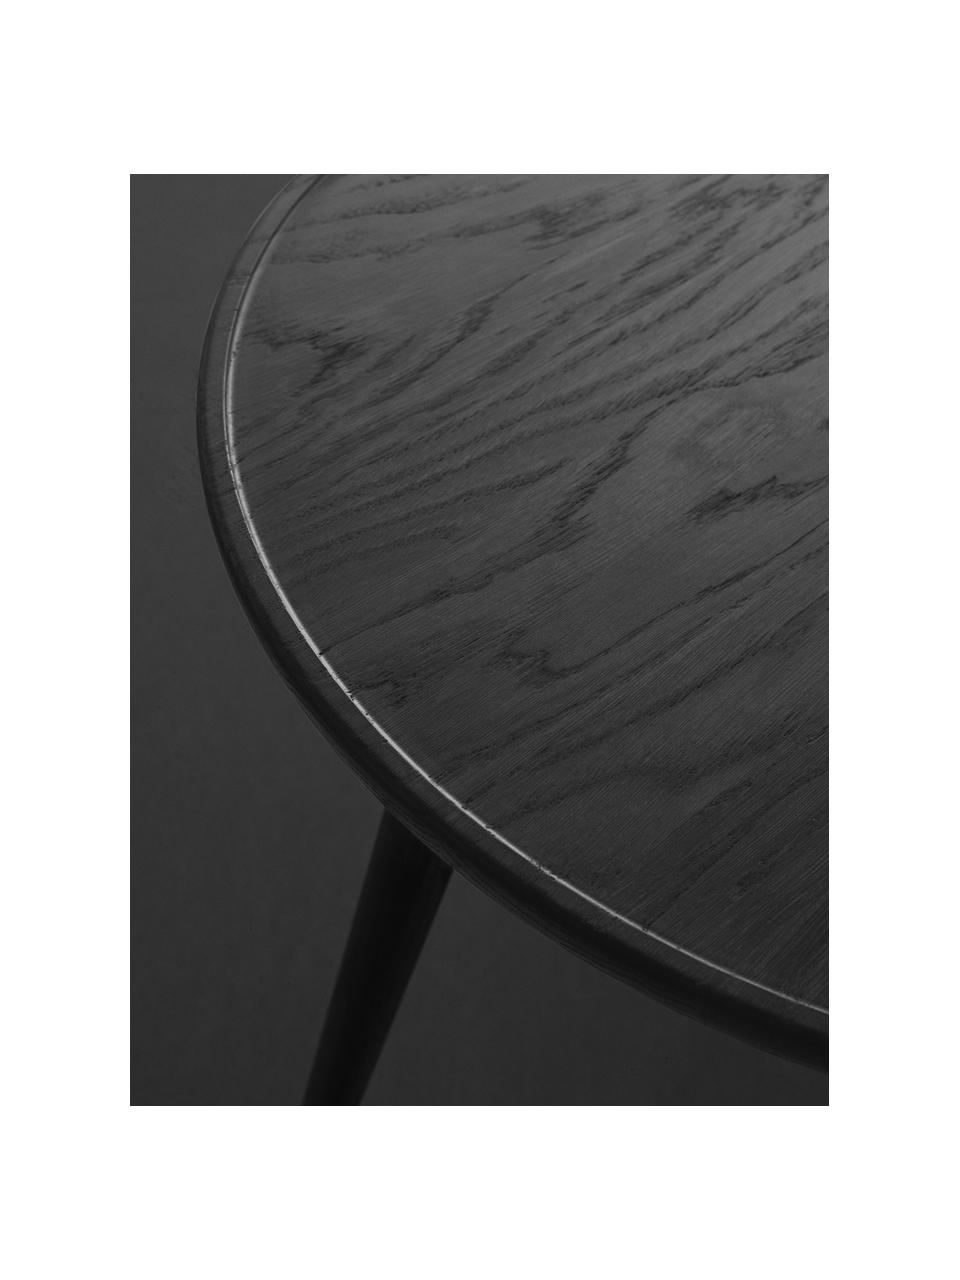 Kulatý odkládací stolek z dubového dřeva Accent, ručně vyrobený, Dubové dřevo

Tento produkt je vyroben z udržitelných zdrojů dřeva s certifikací FSC®., Dubové dřevo, černě lakované, Ø 45 cm, V 42 cm